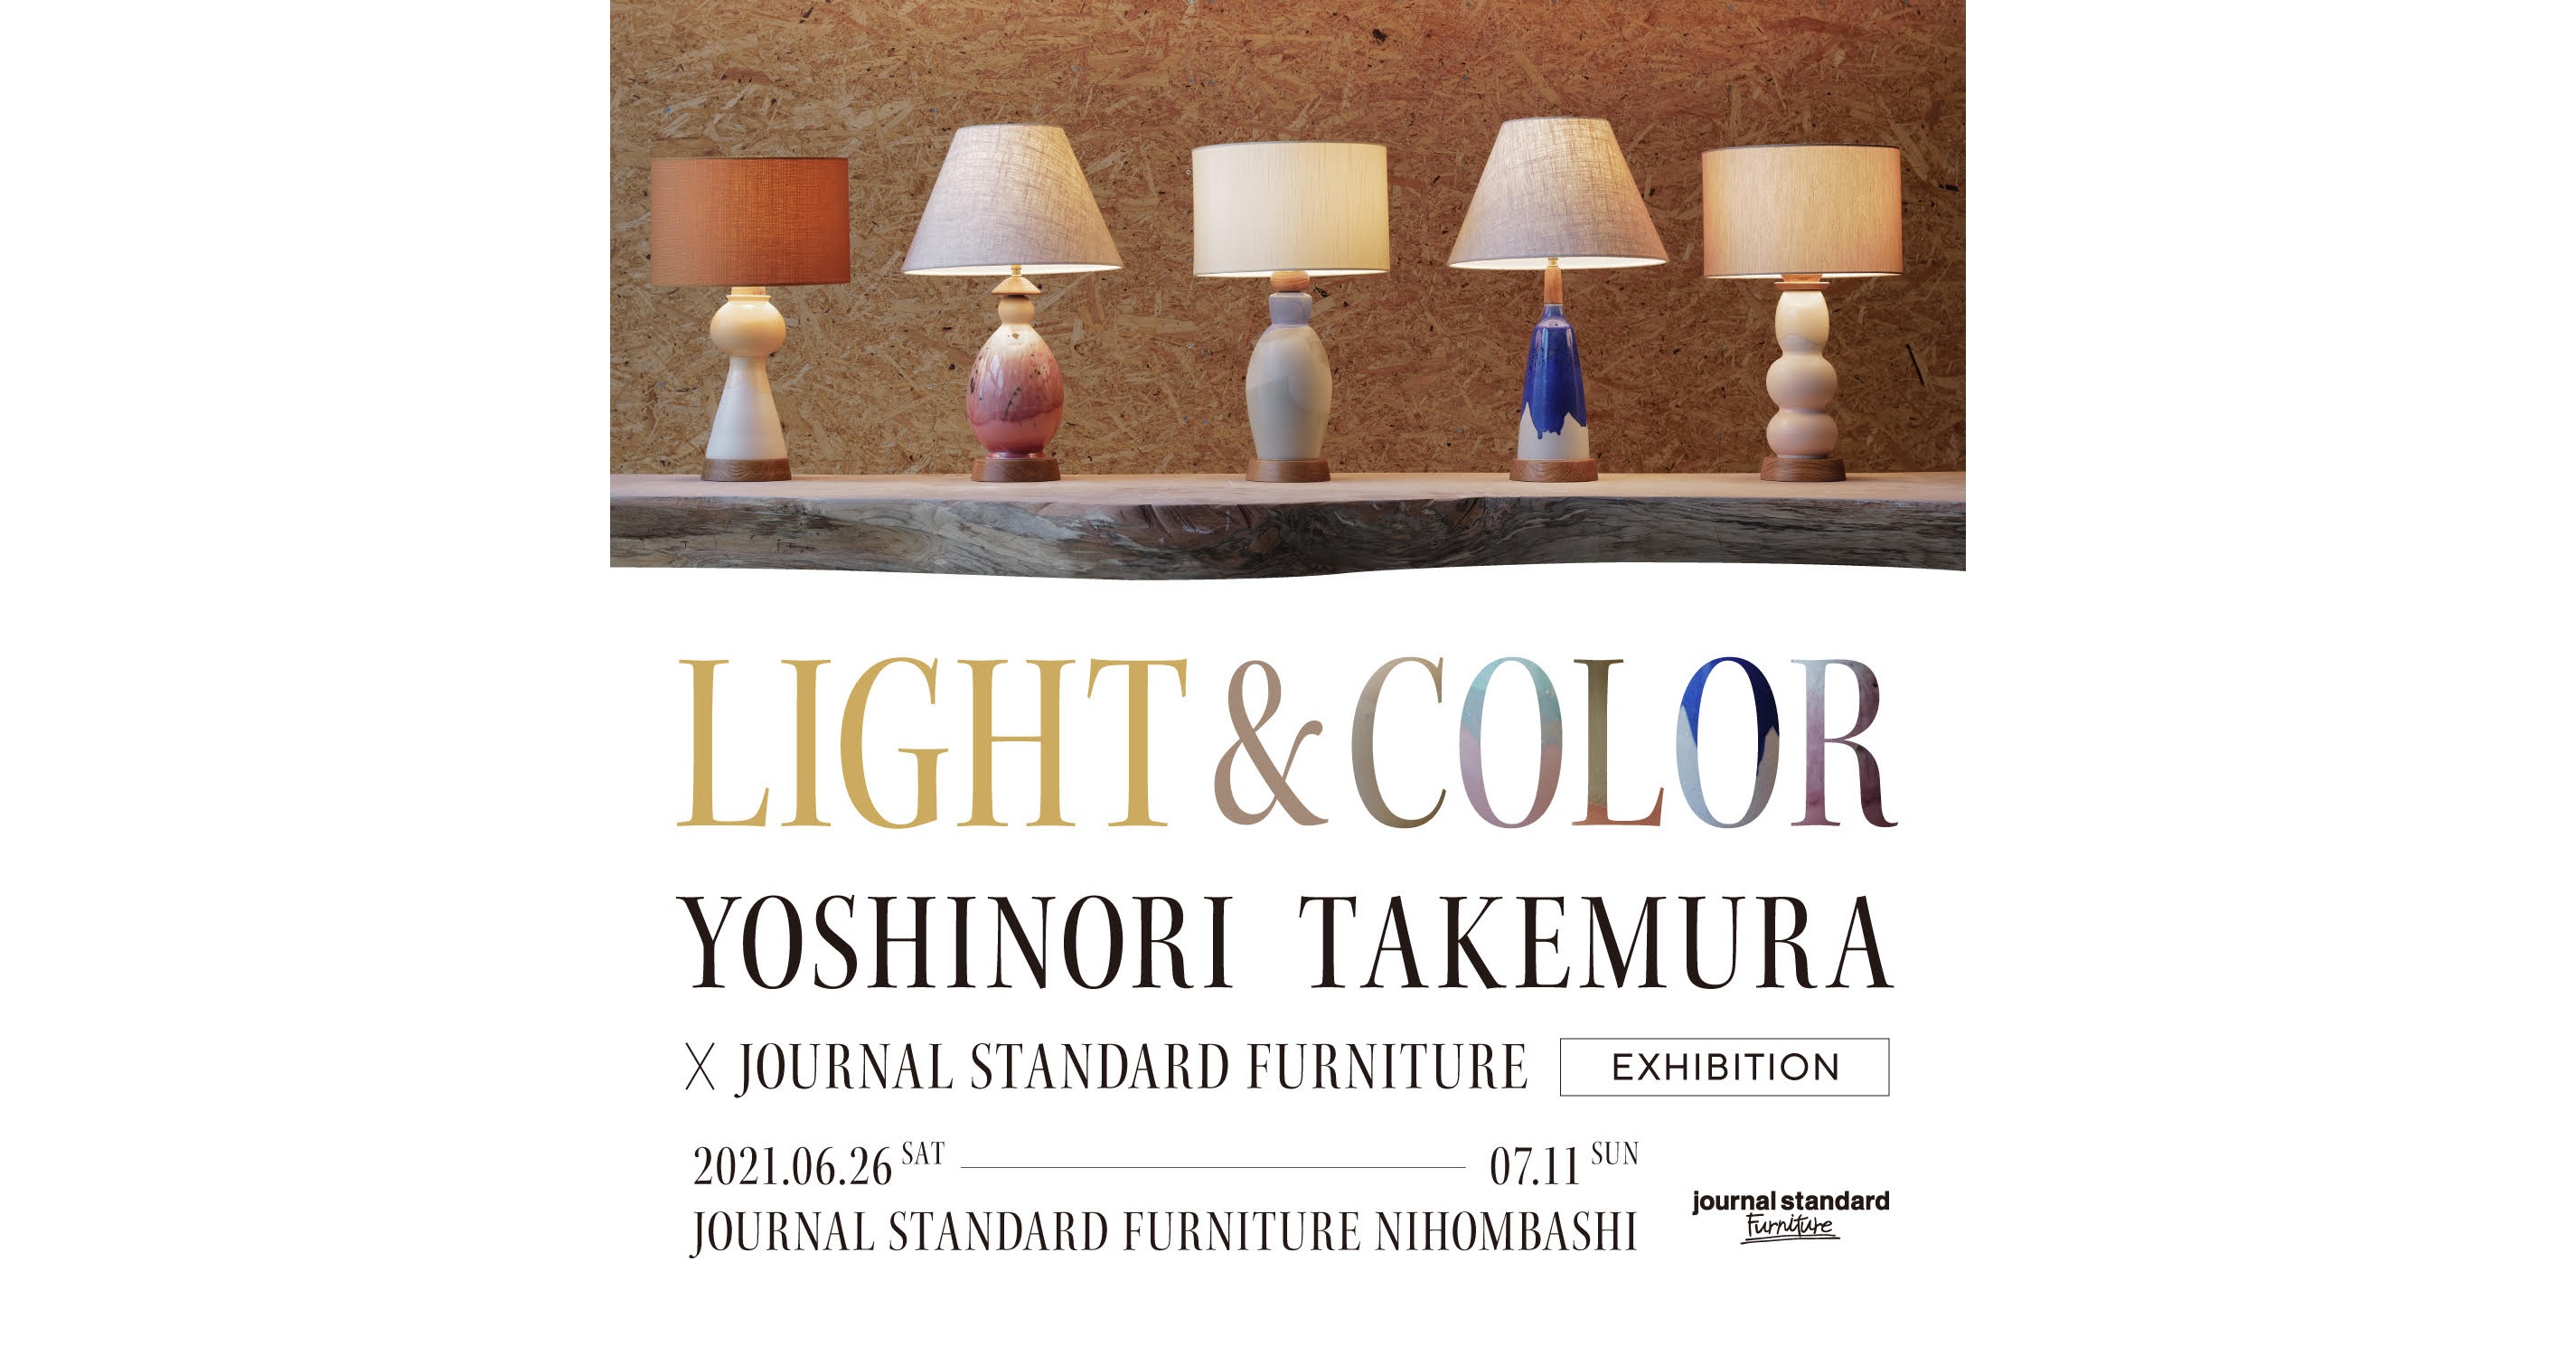 yoshinori-takemura-x-journal-standard-furniture1